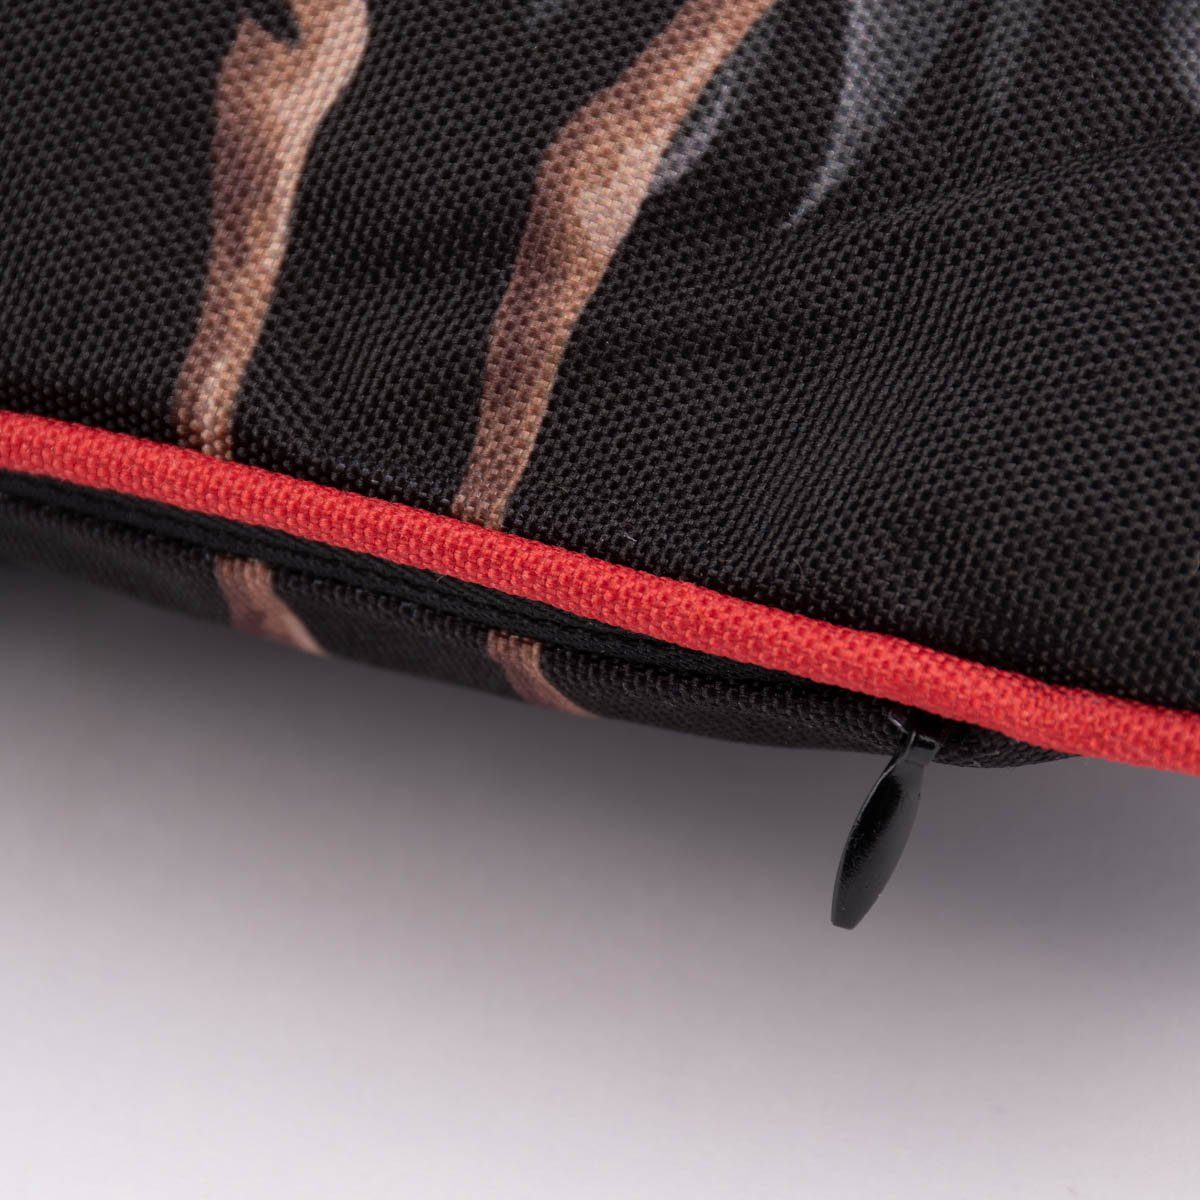 Dekokissen Kederumrandung grau Kranich SCHÖNER schwarz Outdoor Kissen LEBEN. 40x60cm rot beige